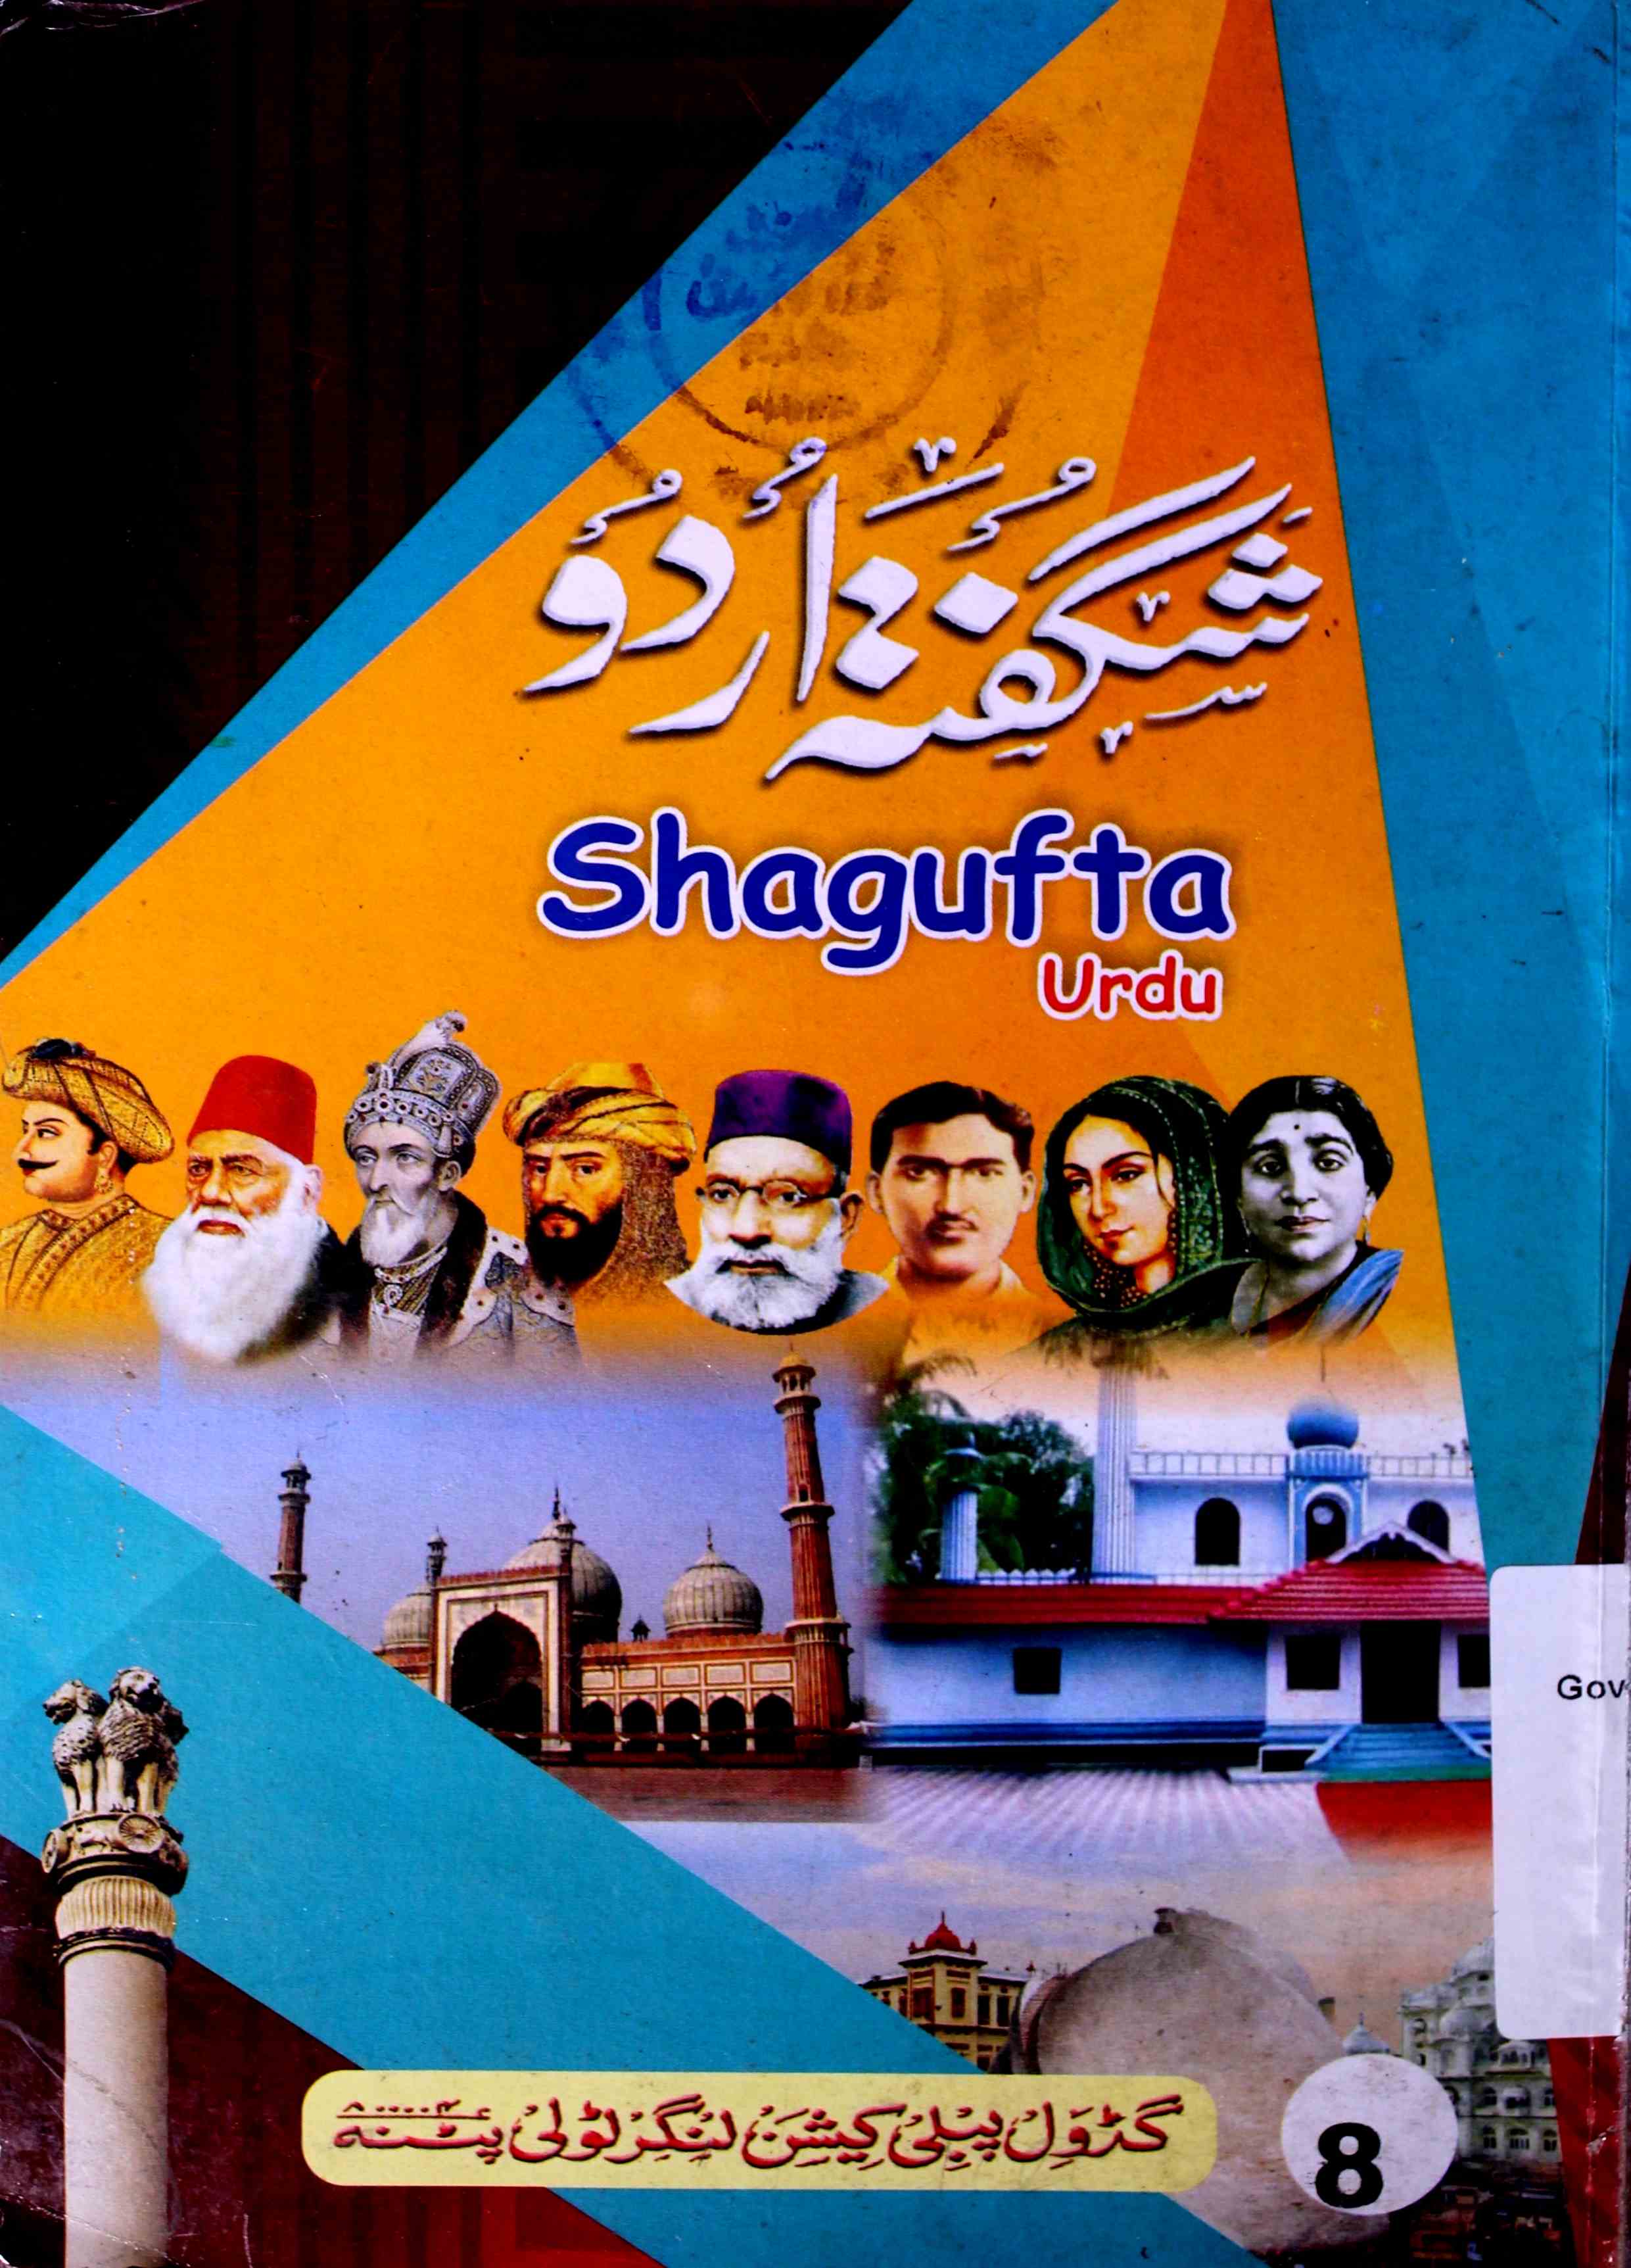 Shagufta-e-Urdu